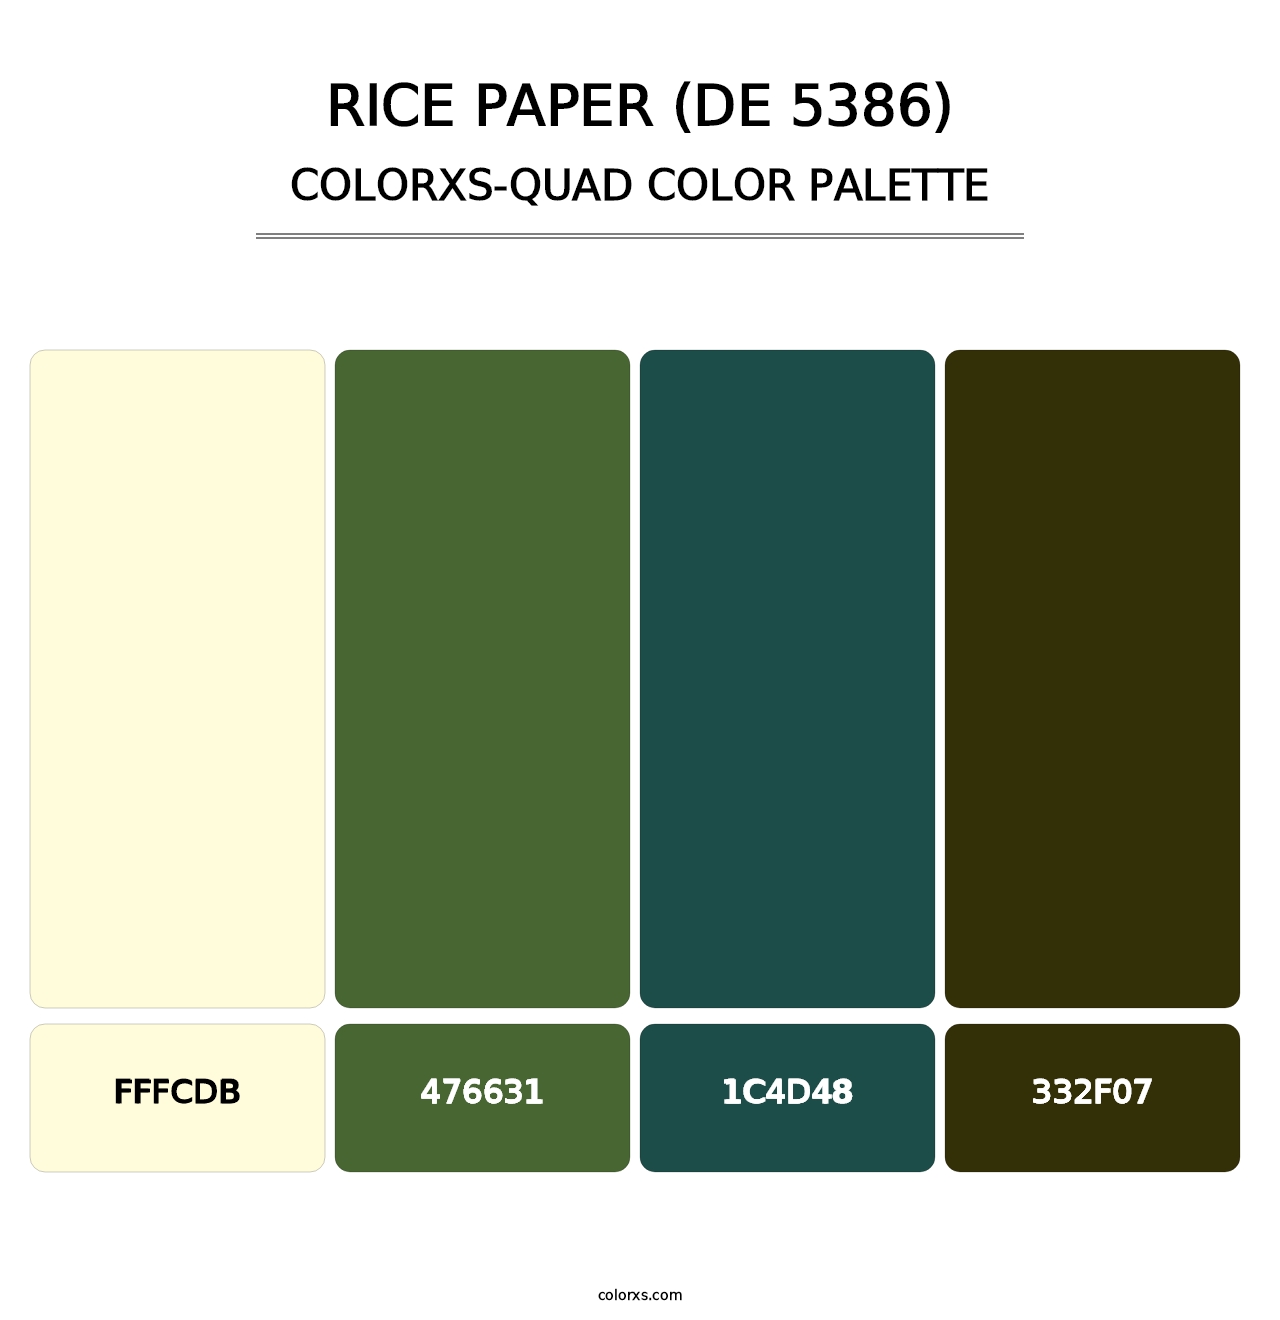 Rice Paper (DE 5386) - Colorxs Quad Palette